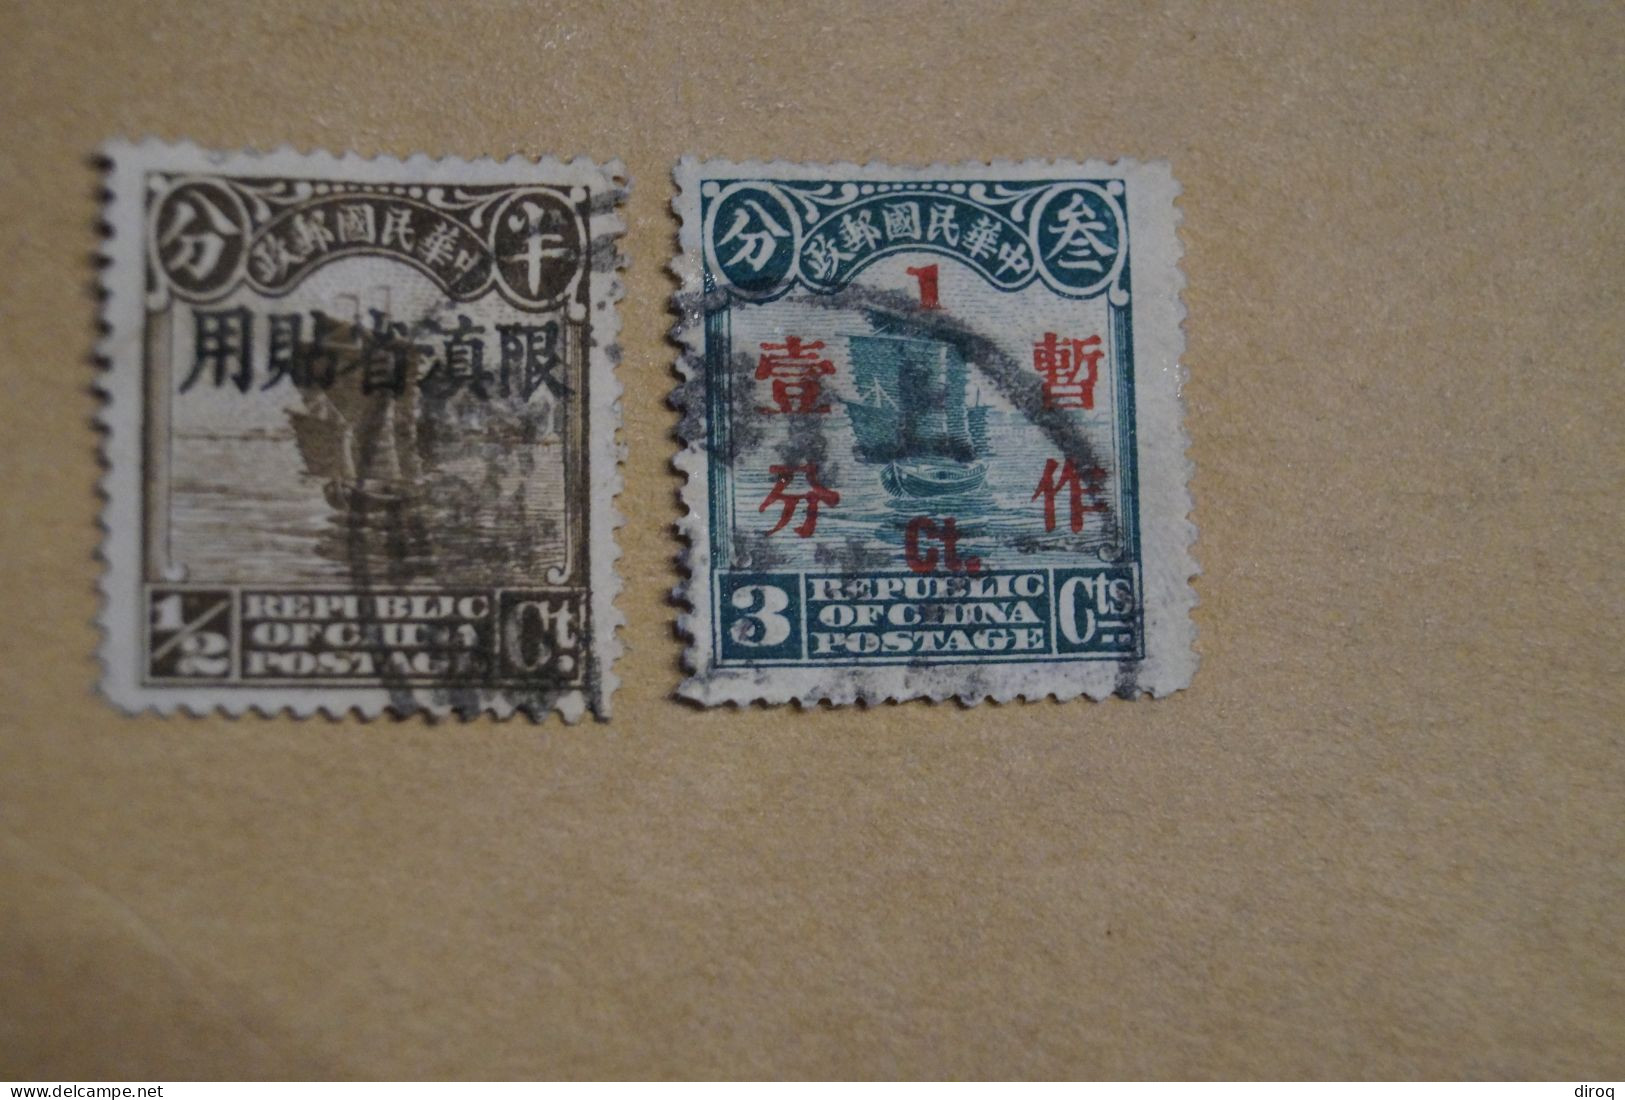 Chine,Chines,lot De 48 Timbres Oblitérés,1913 - 1923,certains Avec Surcharges, Pour Collection,collector - 1912-1949 Republiek